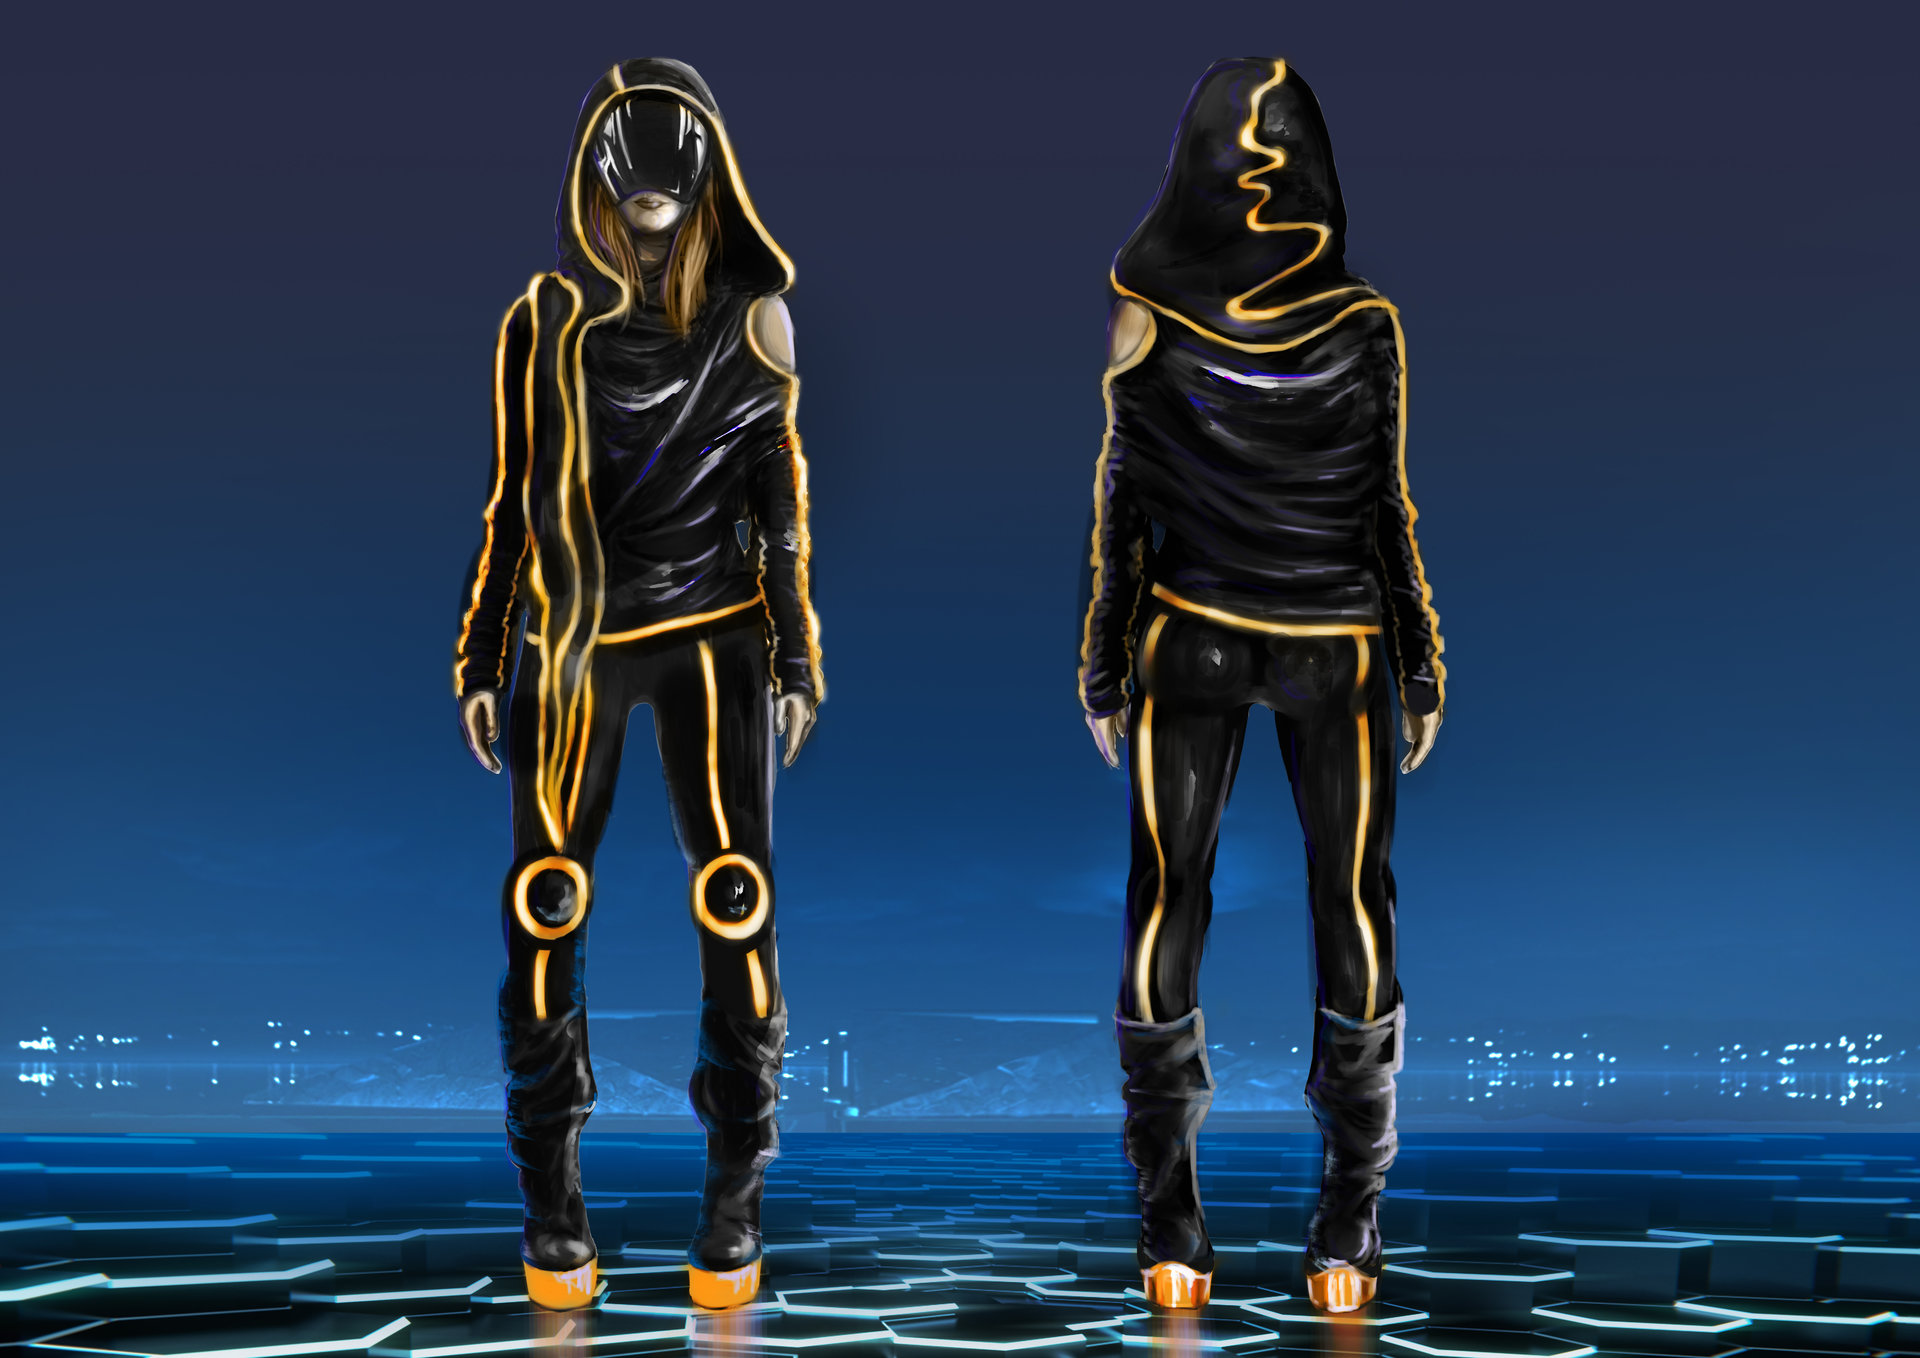 Cyberpunk clothes concept art фото 77